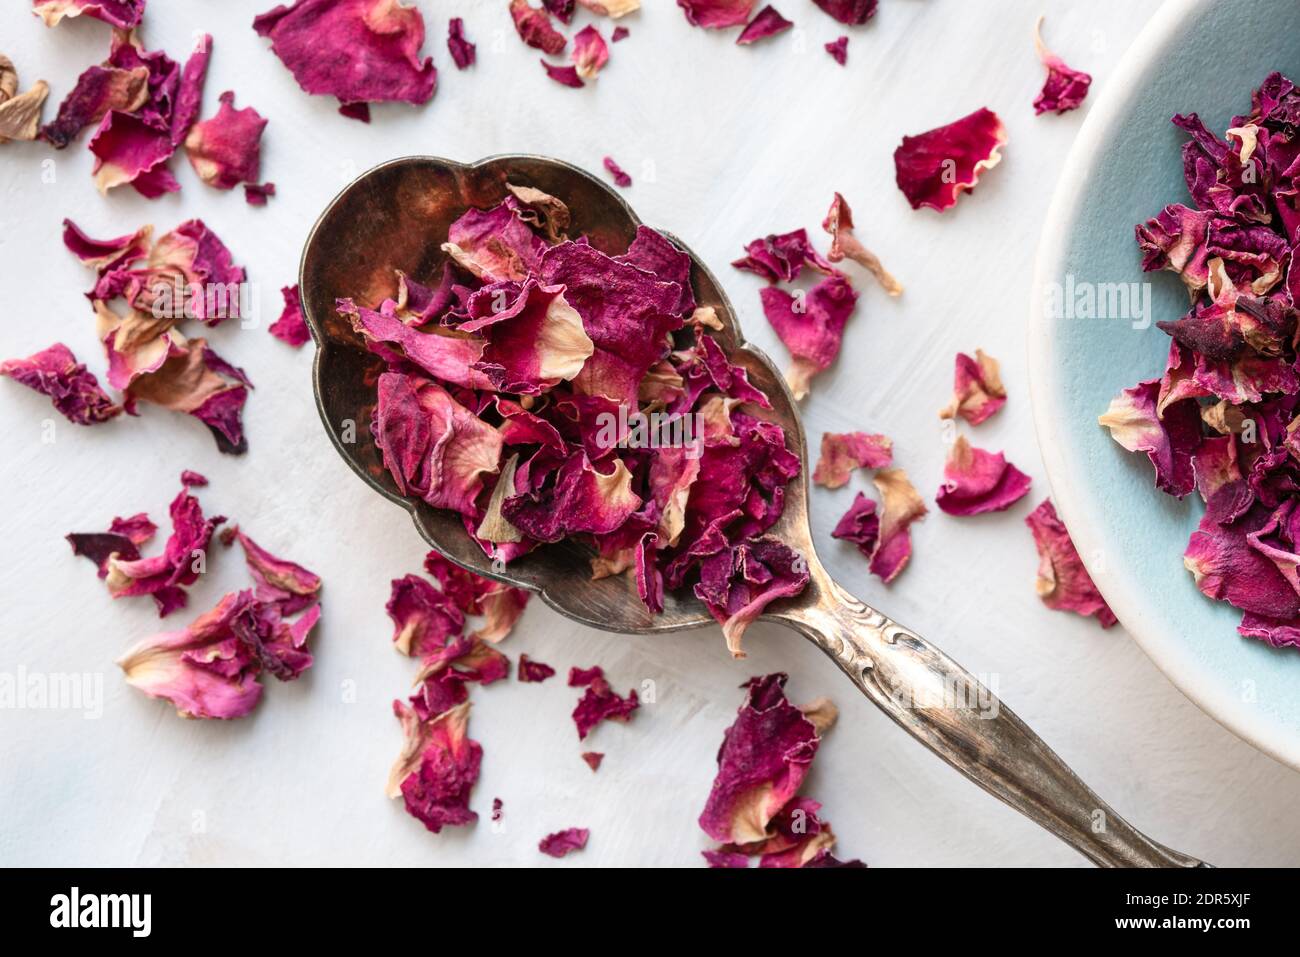 Petali di rosa essiccati su un cucchiaio Foto Stock